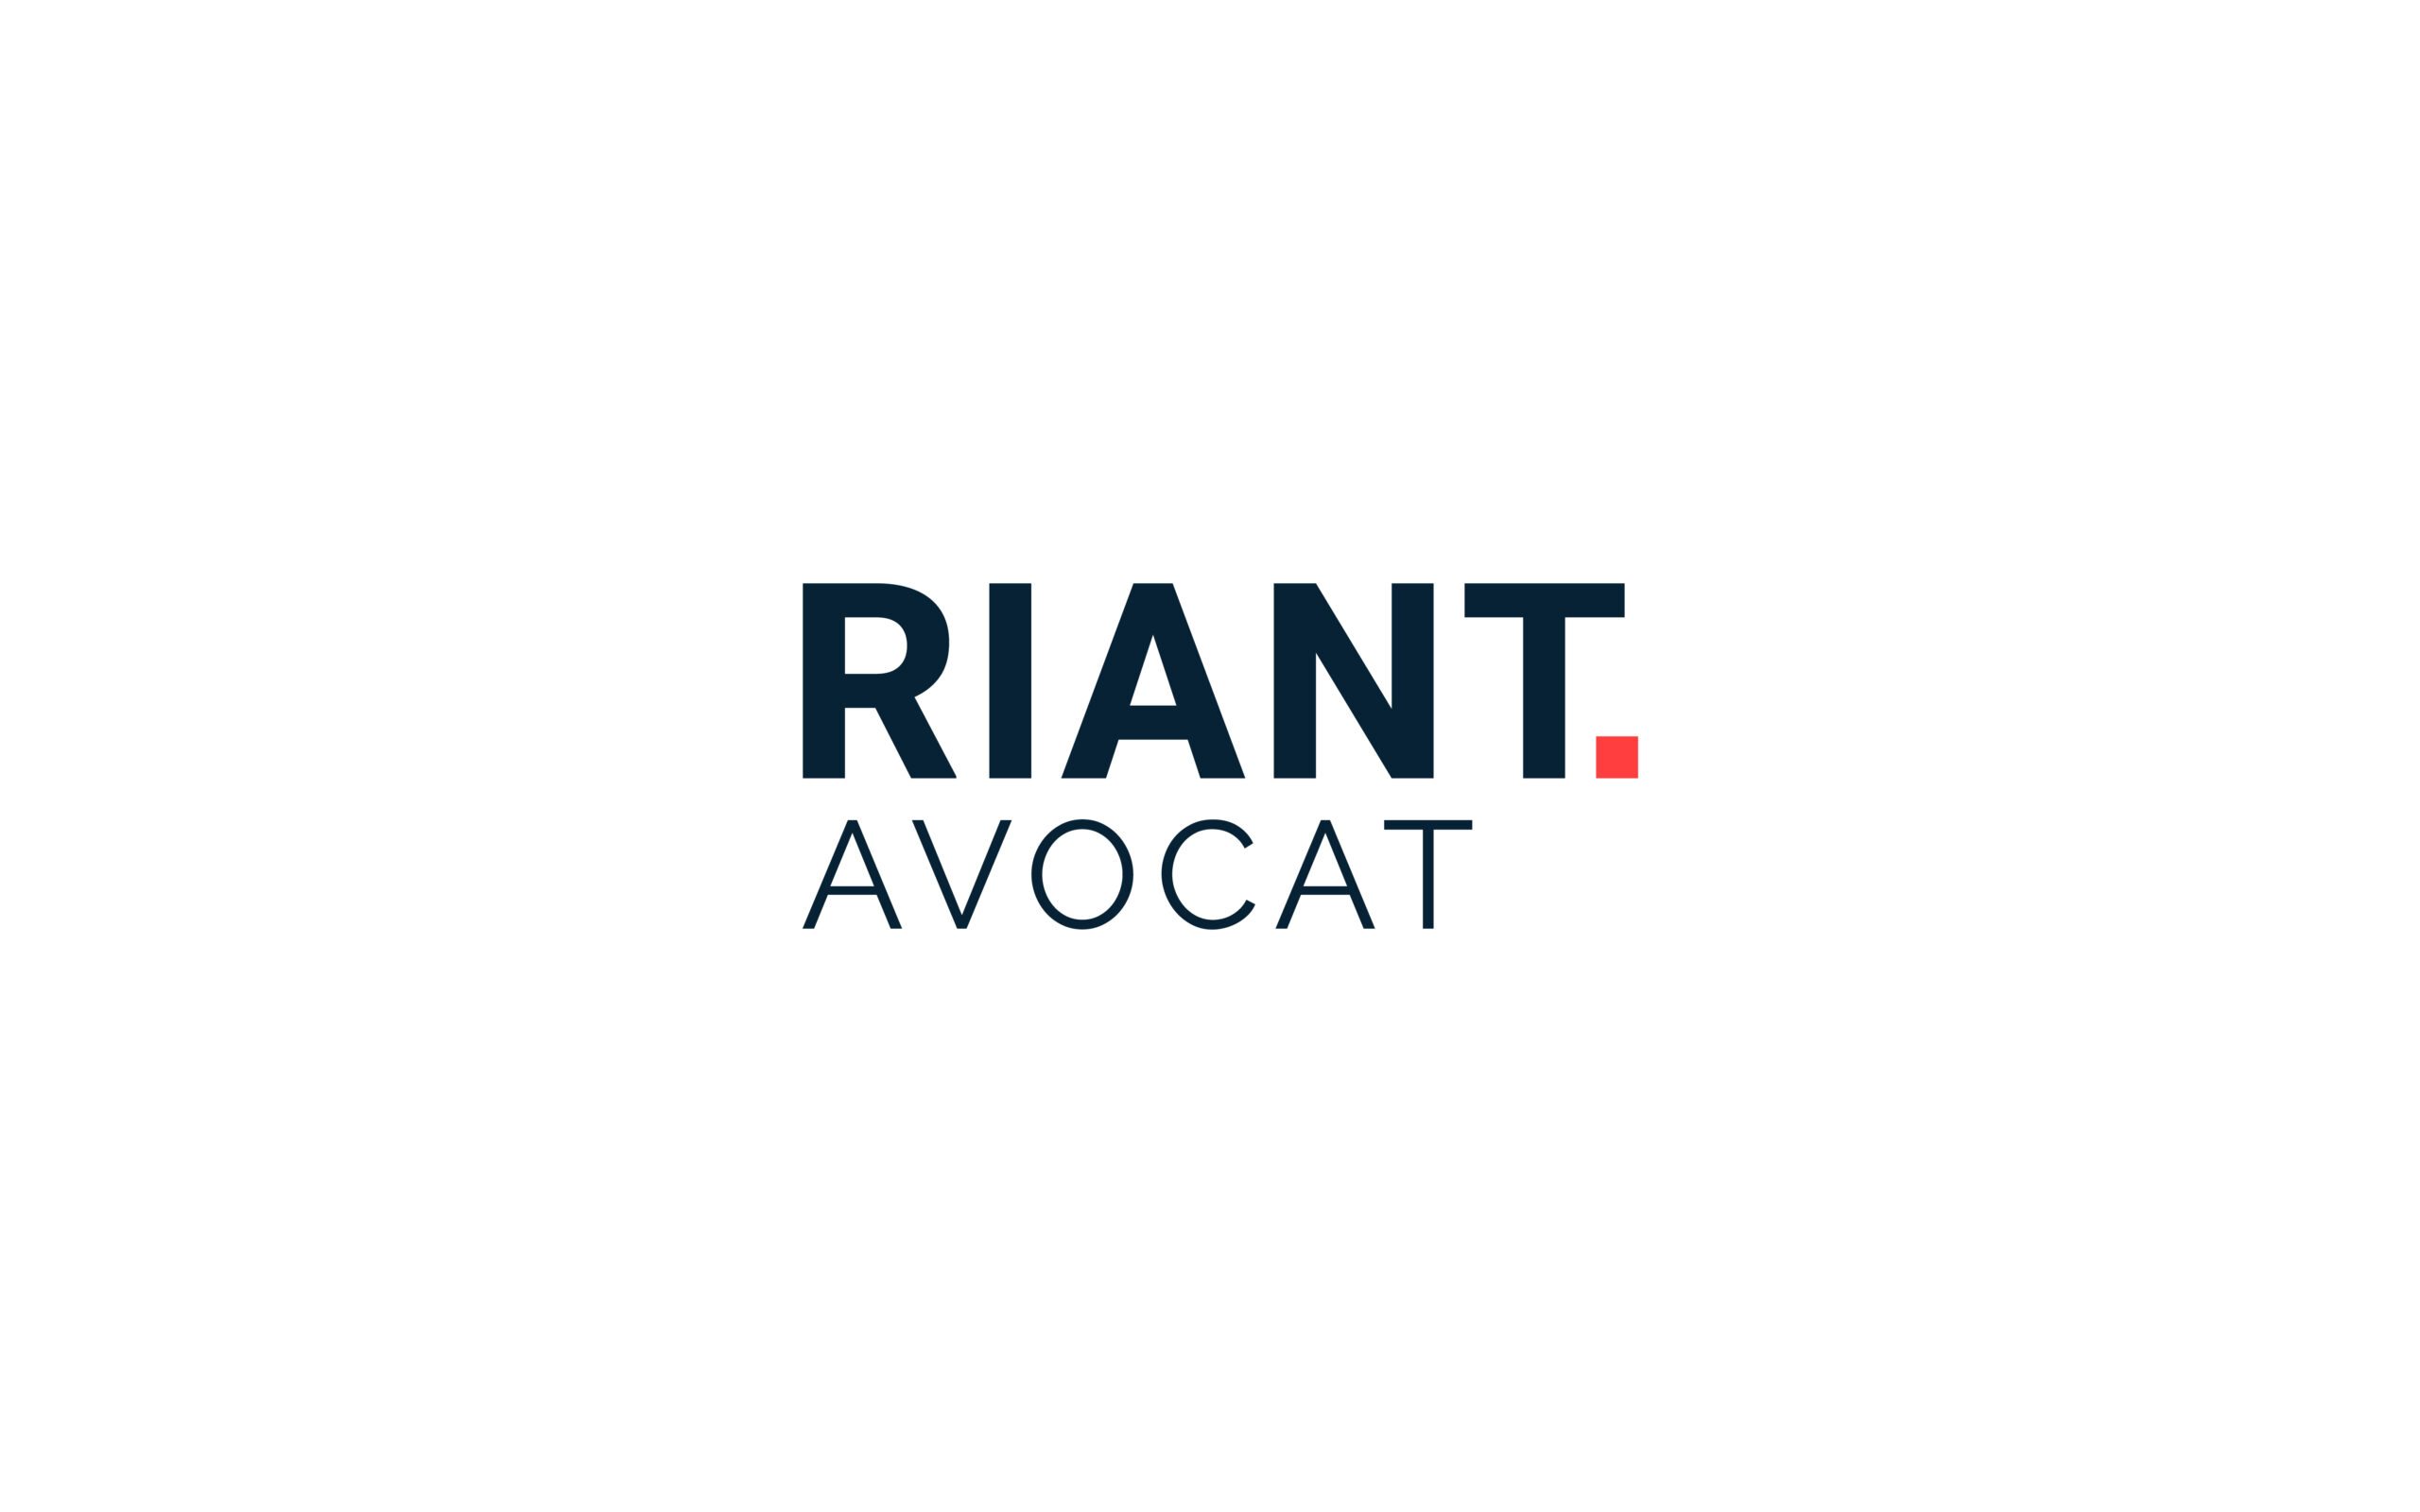 Riant avocat logo